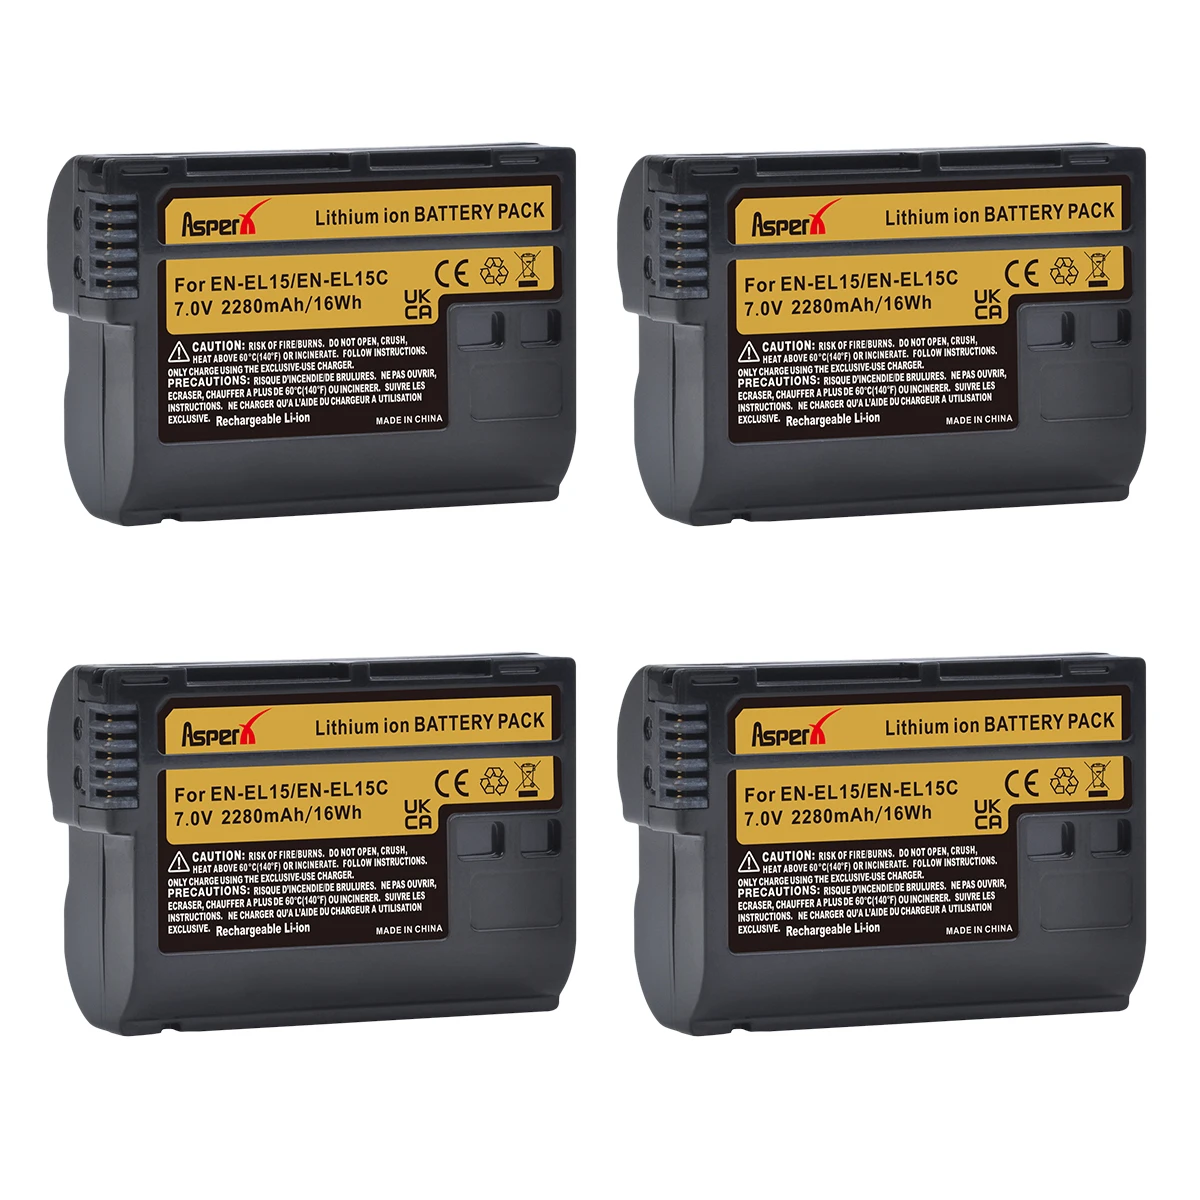 

EN-EL15B EN-EL15 EN-EL15C Battery for Nikon Z5, D850, Z6, D500, Z7, 1 V1, D600, D610, D750, D780, , D810, D810A, D800, D7000